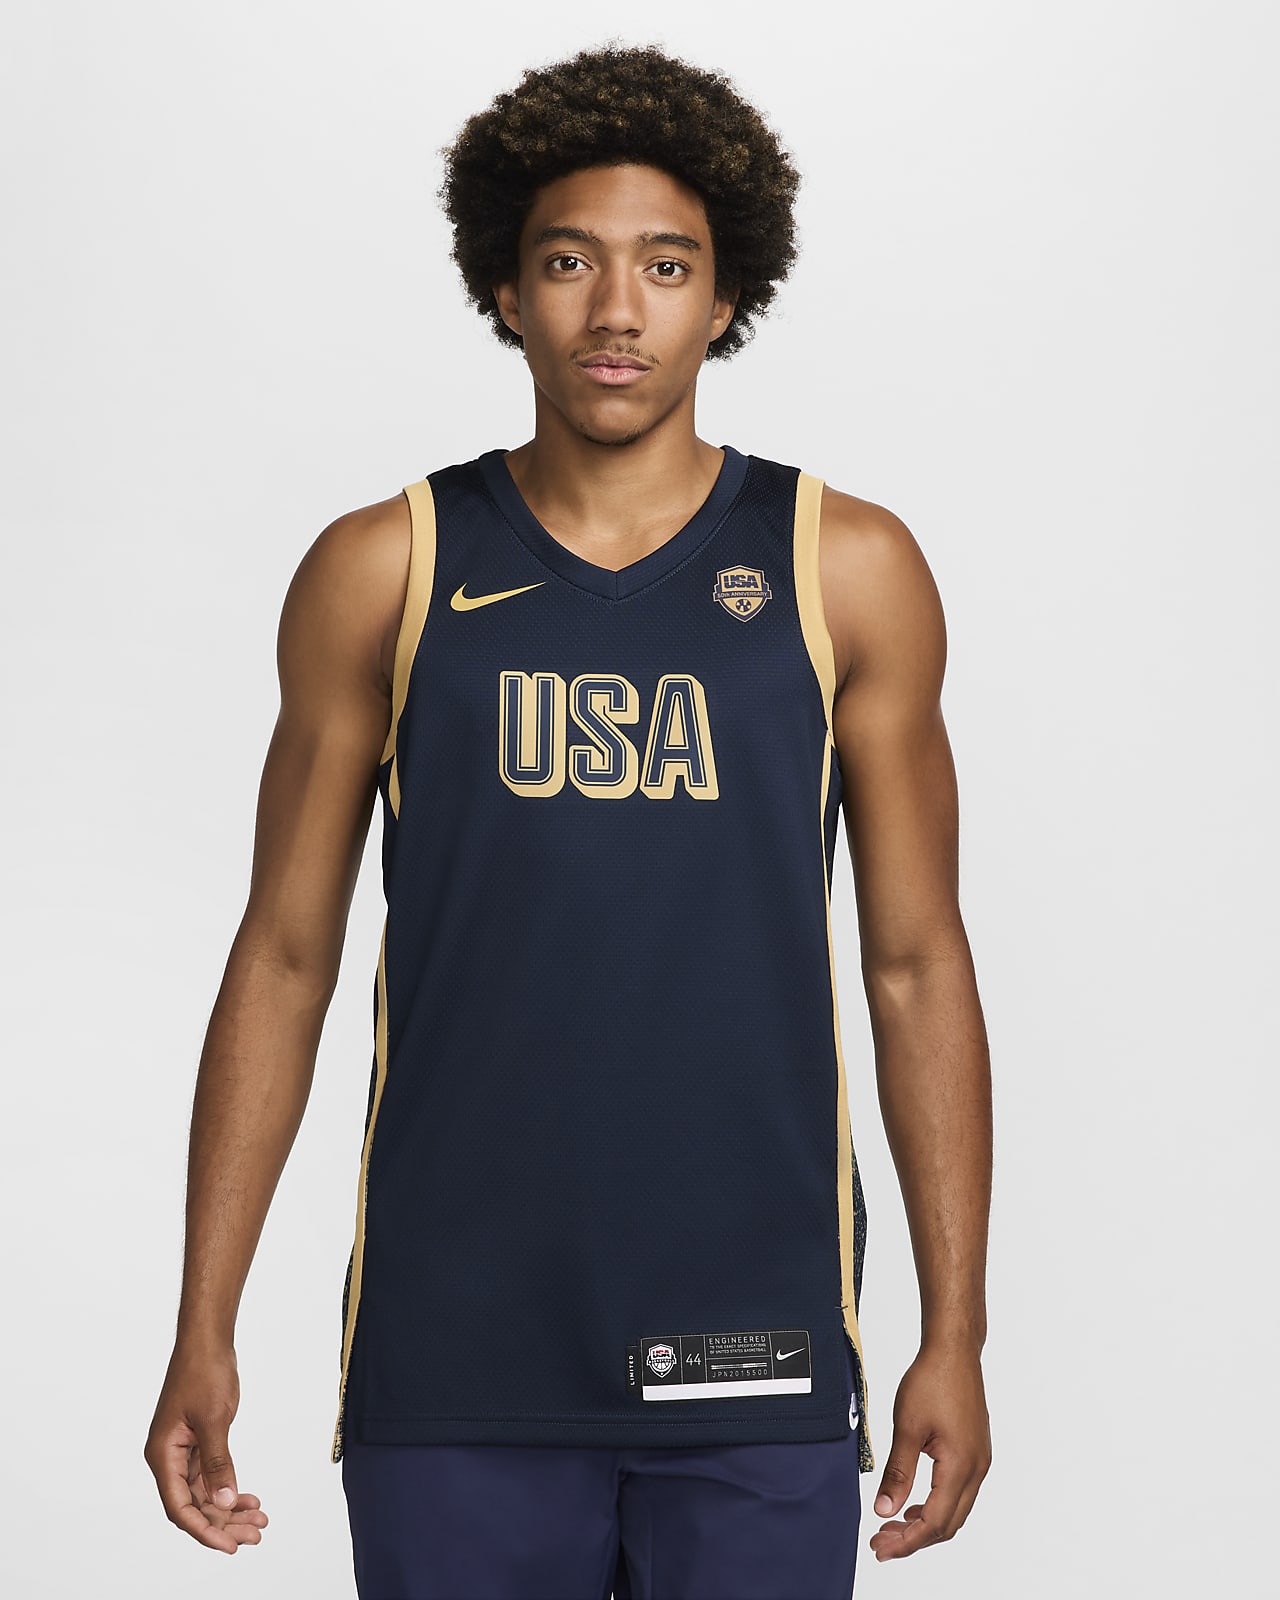 USA Limited Nike Basketballtrikot (Herren)